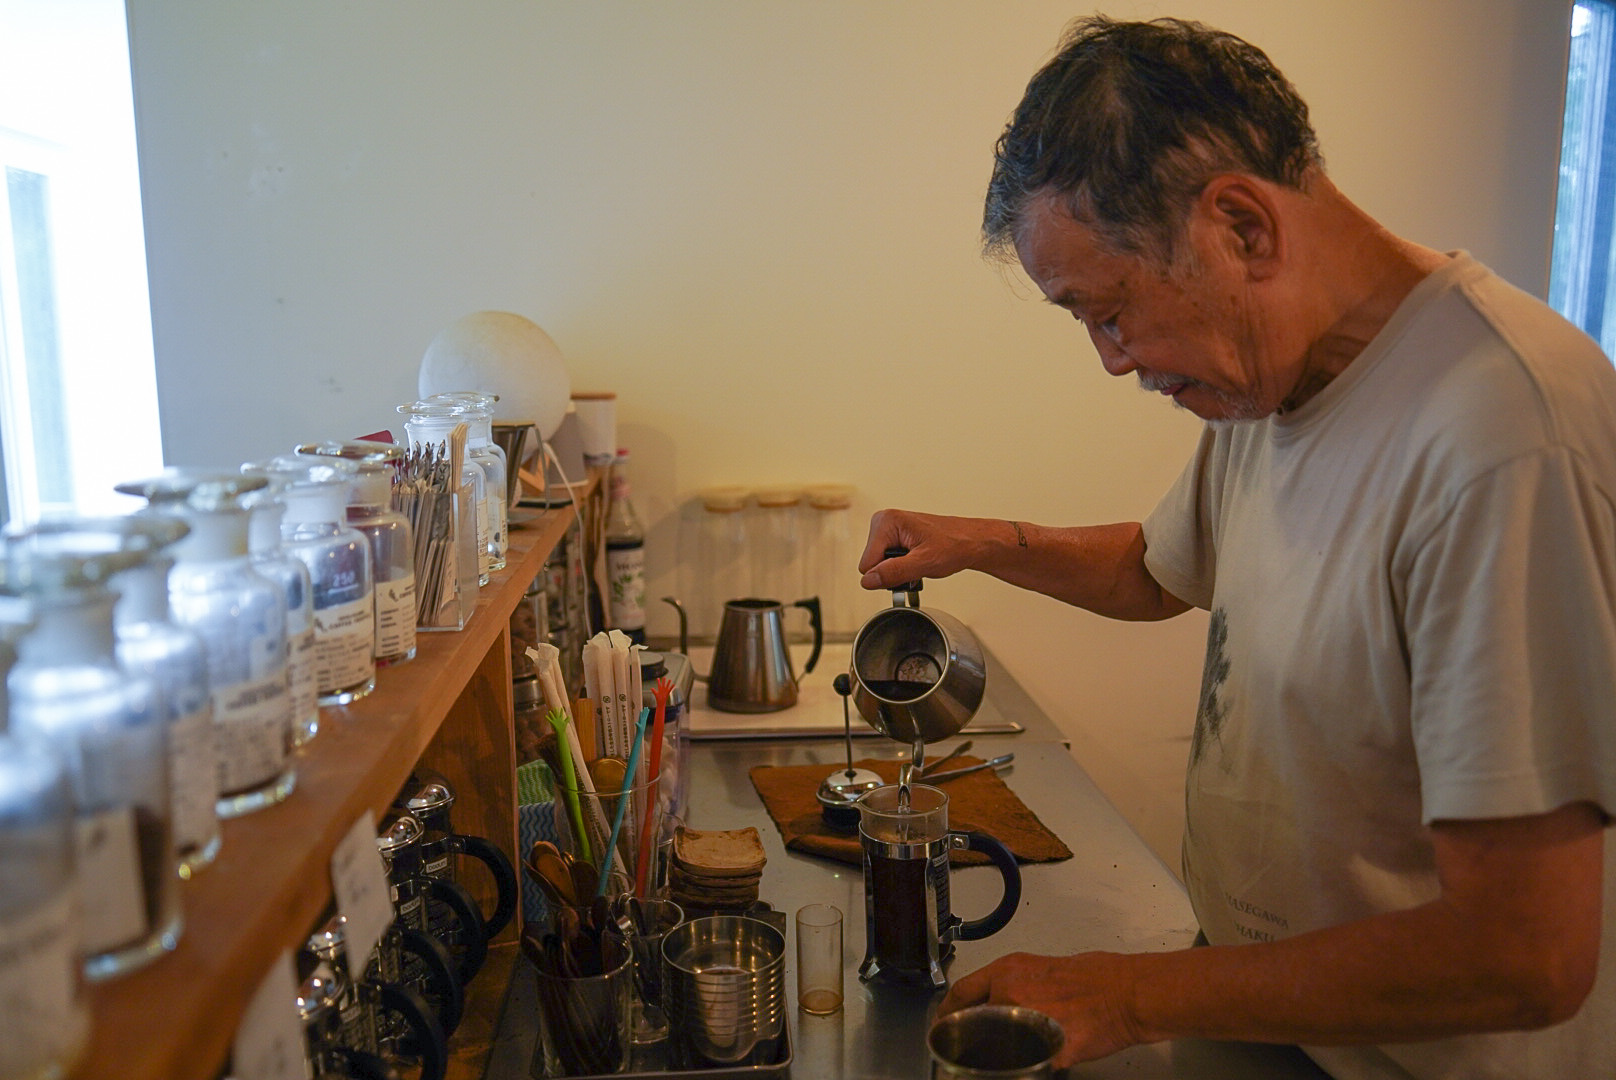 壺中天のコーヒーはスペシャルティコーヒーで、コーヒー・プレスで抽出。ワインで言うところのテロワール（産地特性）を反映した風味特性があるとのこと。